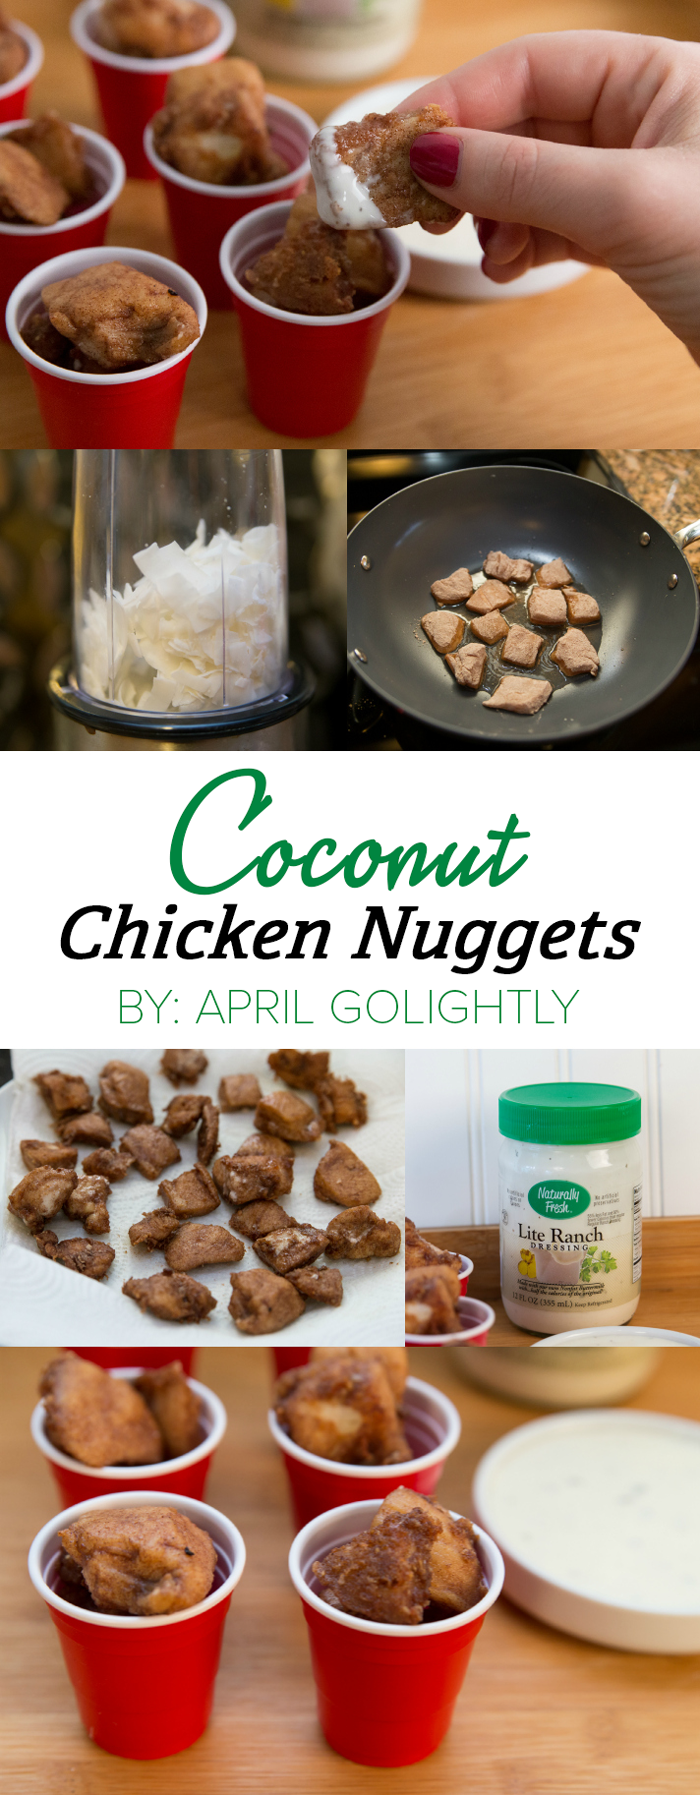 Coconut-Chicken-Nuggets